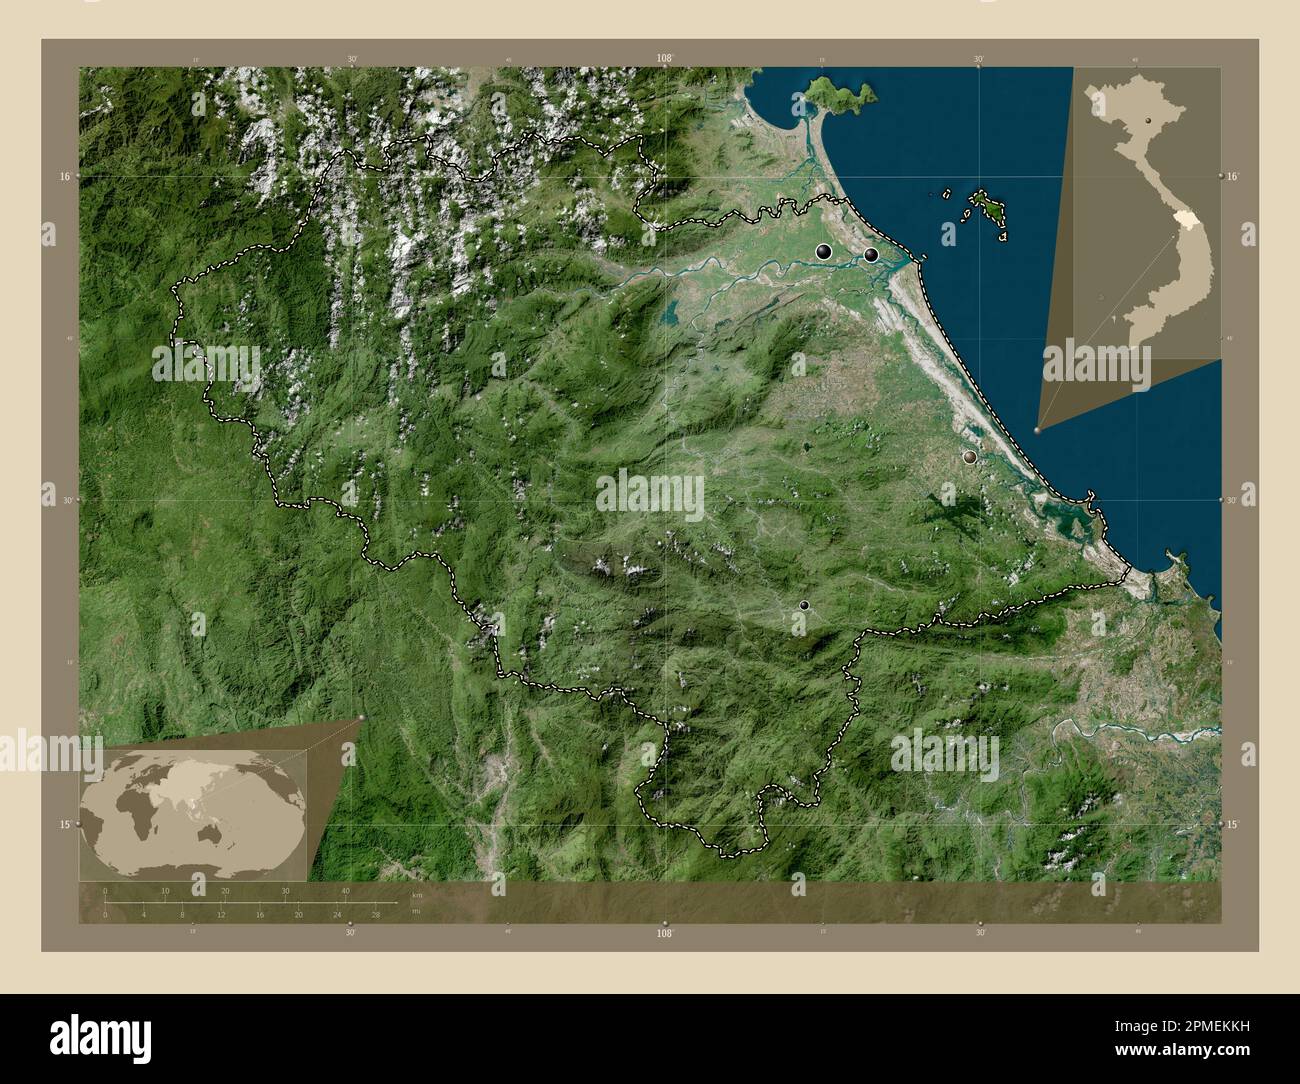 Quang Nam, Provinz Vietnam. Hochauflösende Satellitenkarte. Standorte der wichtigsten Städte der Region. Eckkarten für zusätzliche Standorte Stockfoto